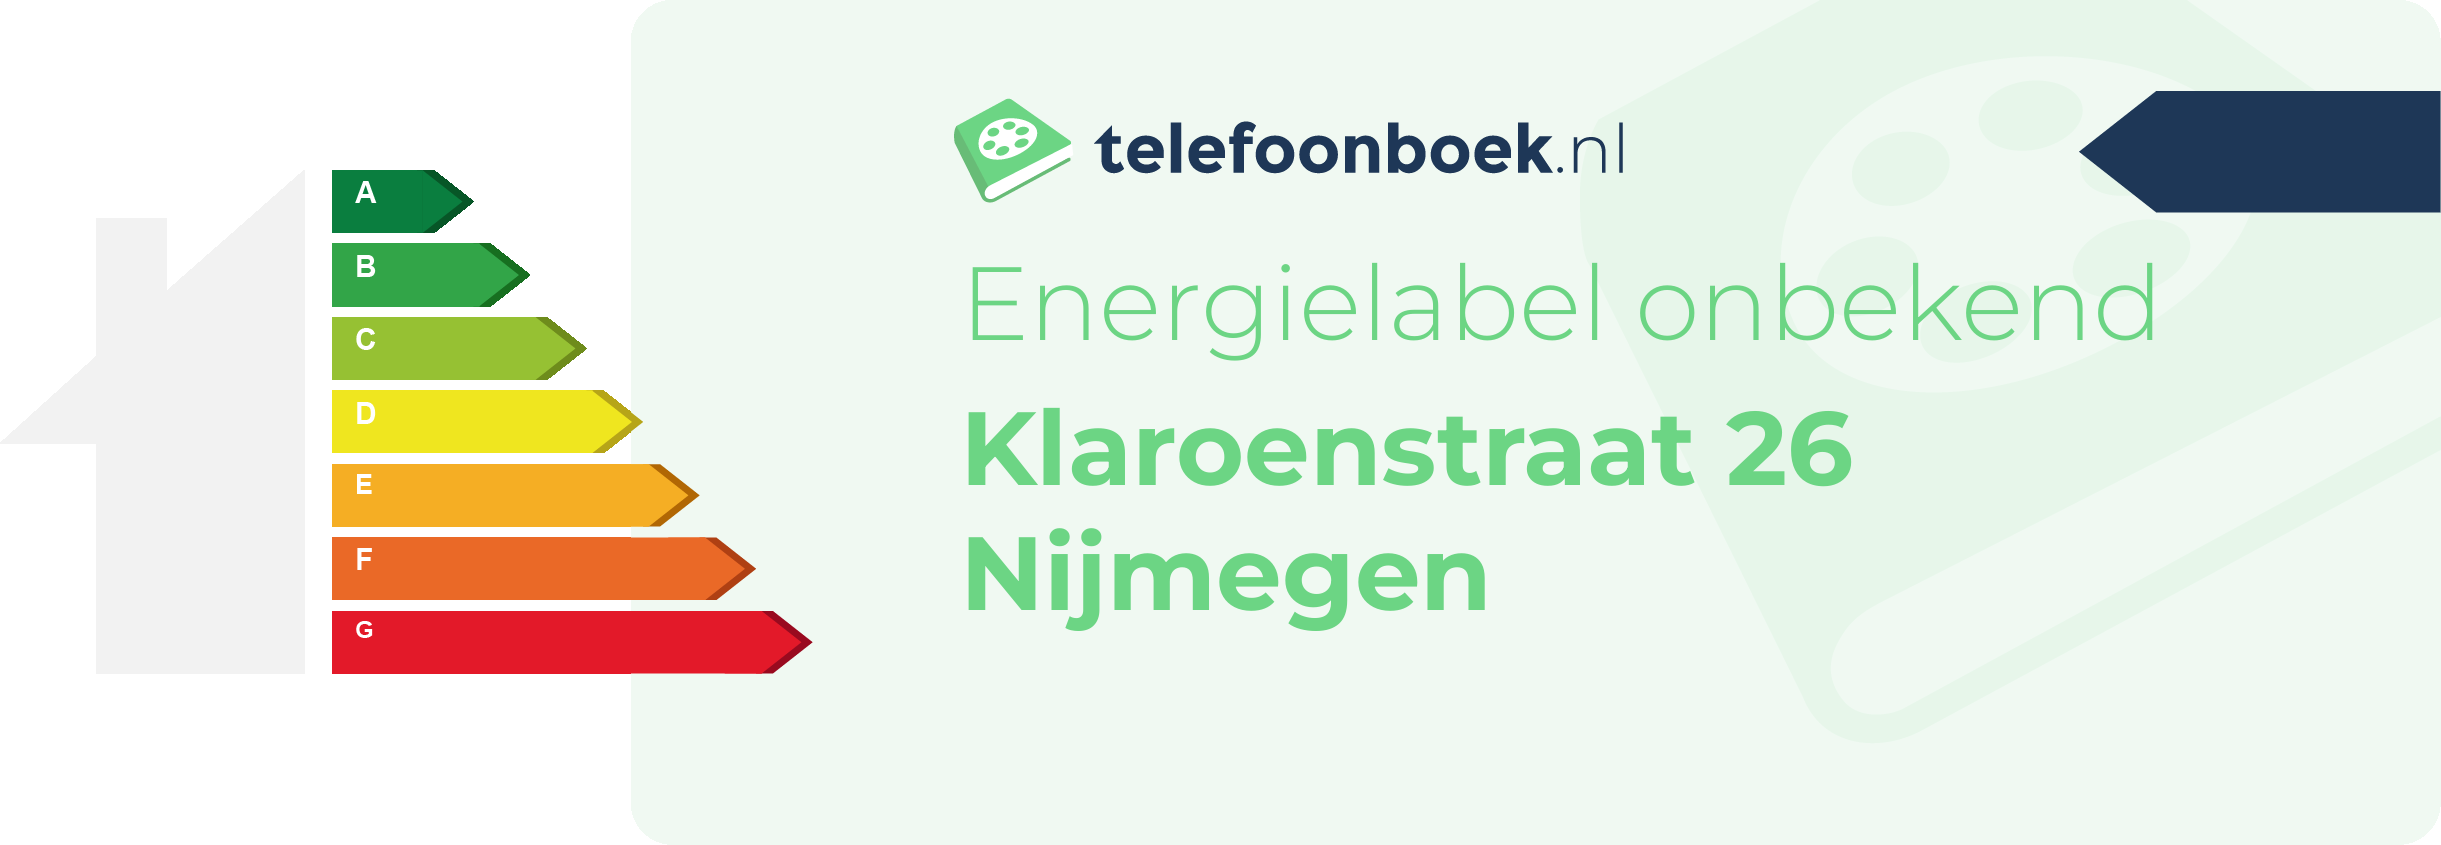 Energielabel Klaroenstraat 26 Nijmegen